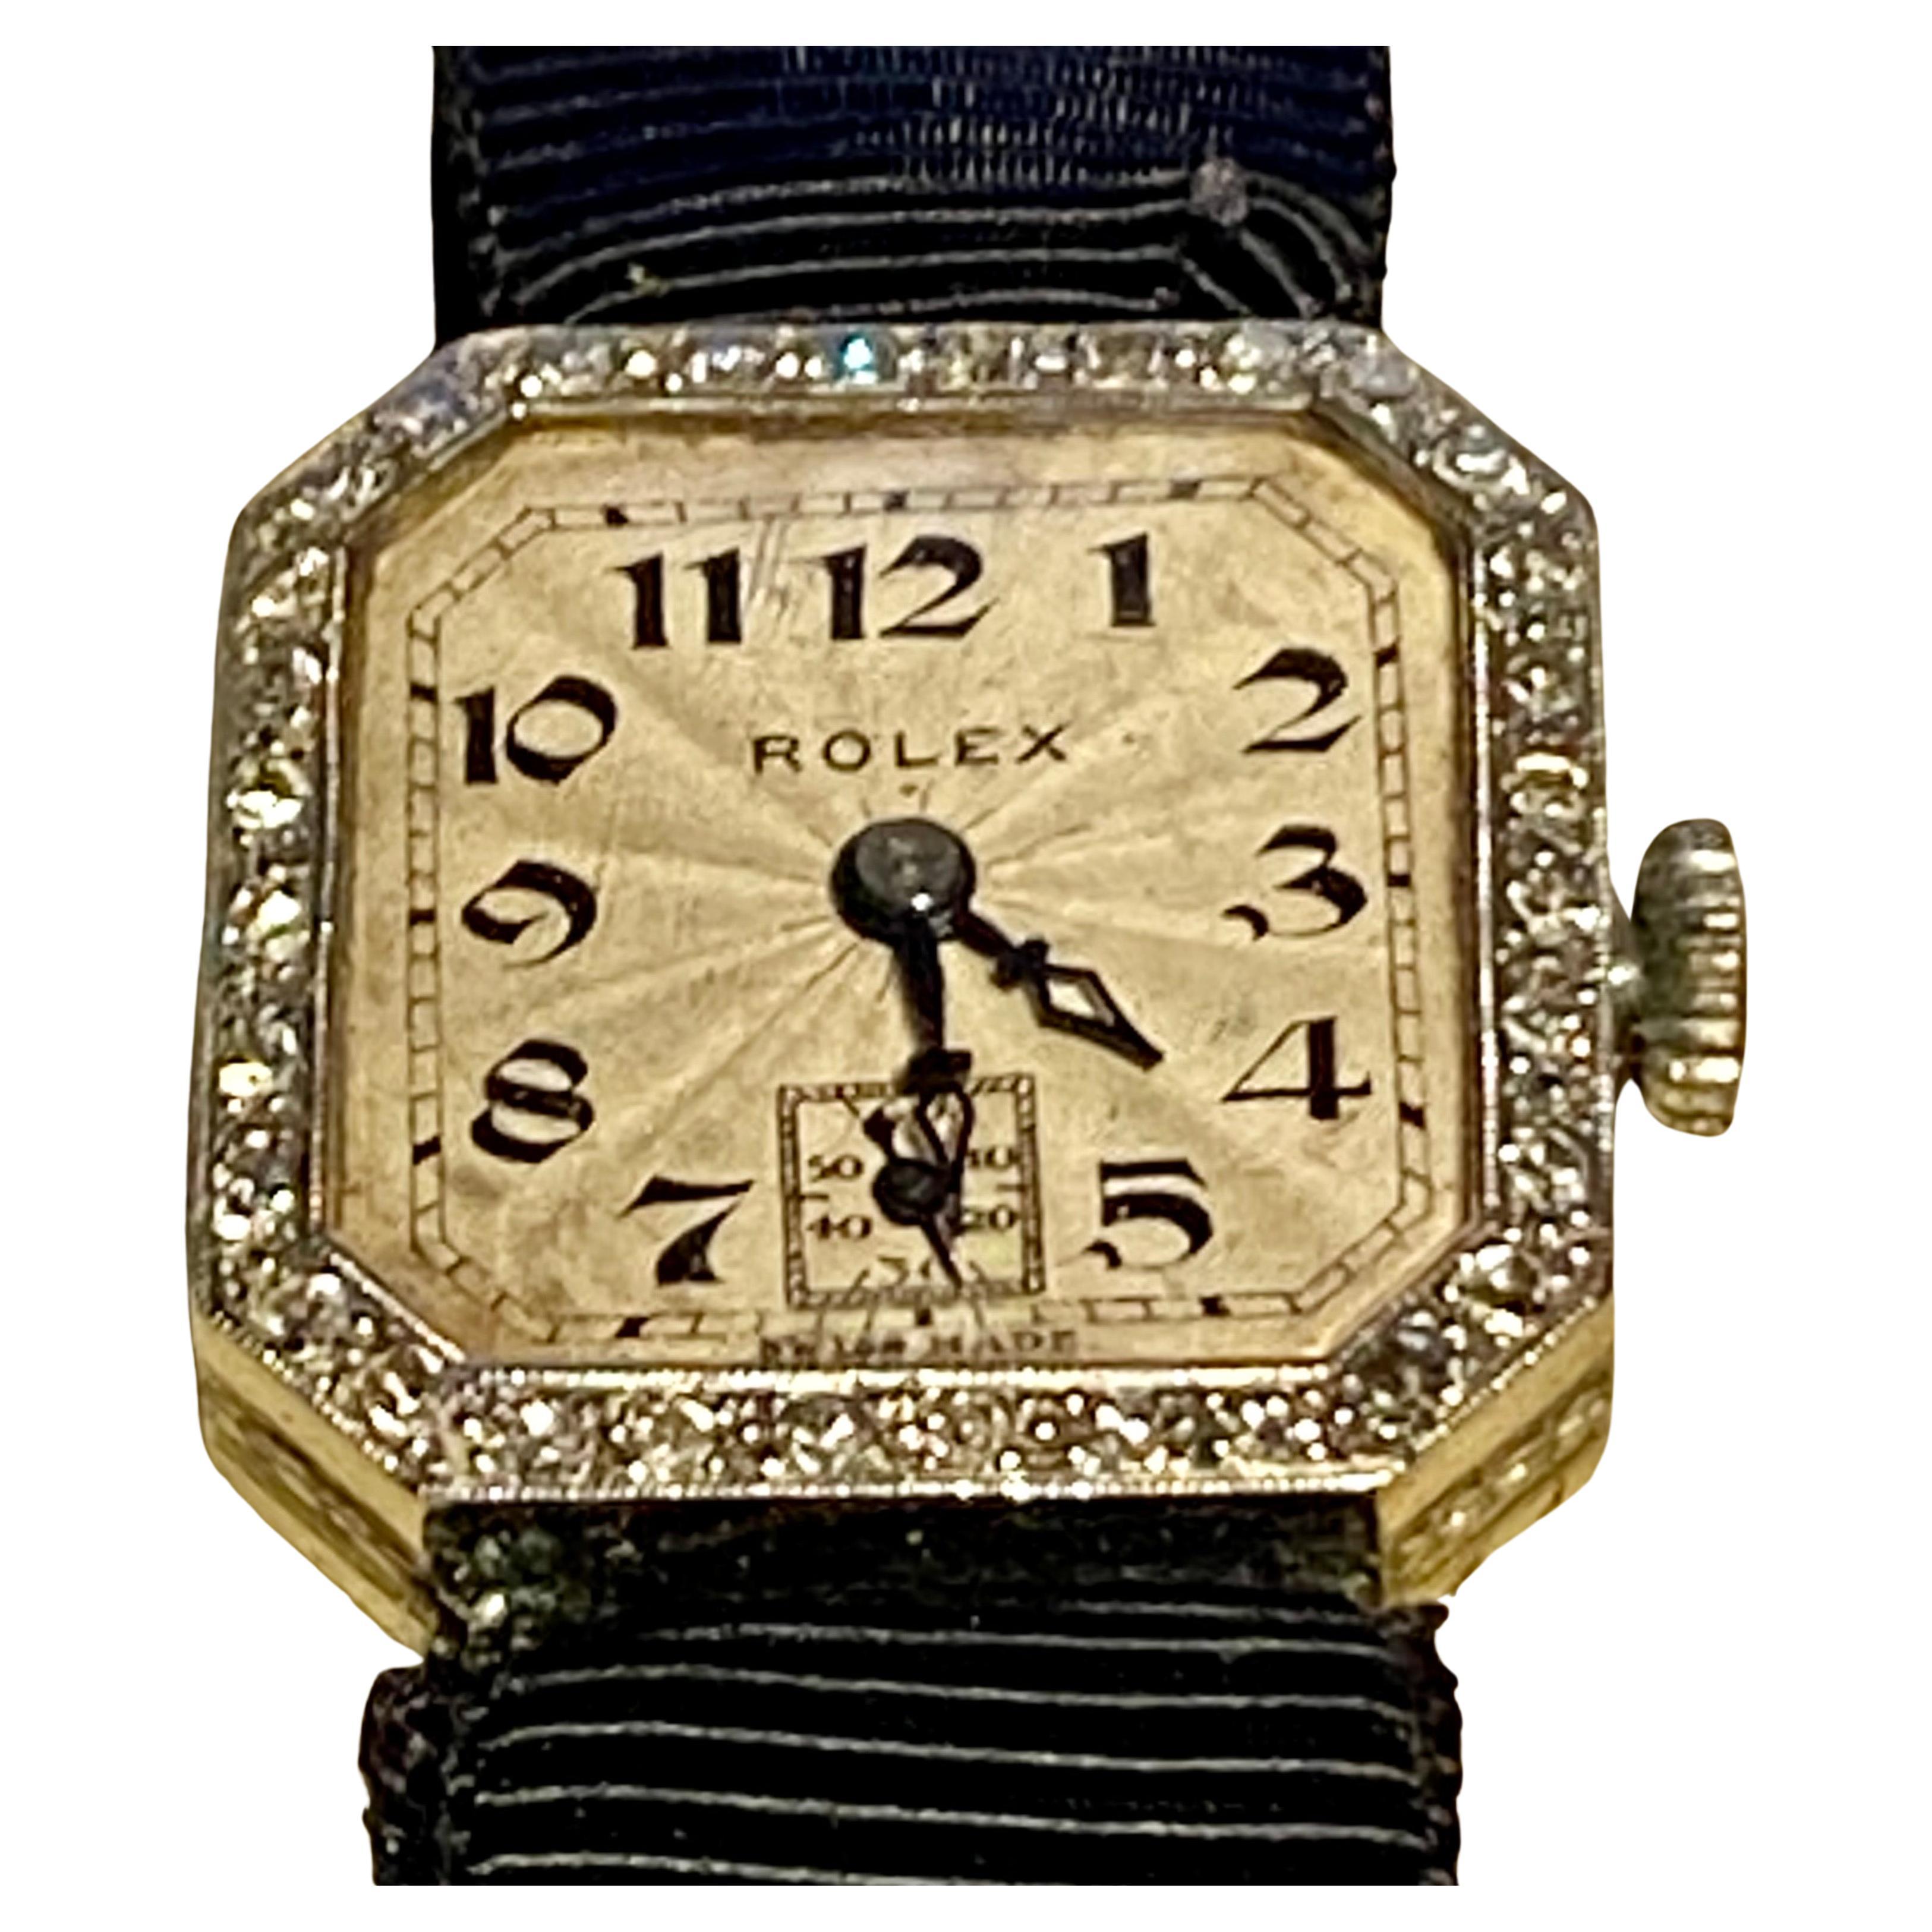 Montre-bracelet Rolex pour dame de qualité supérieure datant des années 1920, avec boîtier en or blanc 18 carats et cadran en émail guilloché entouré de diamants. 